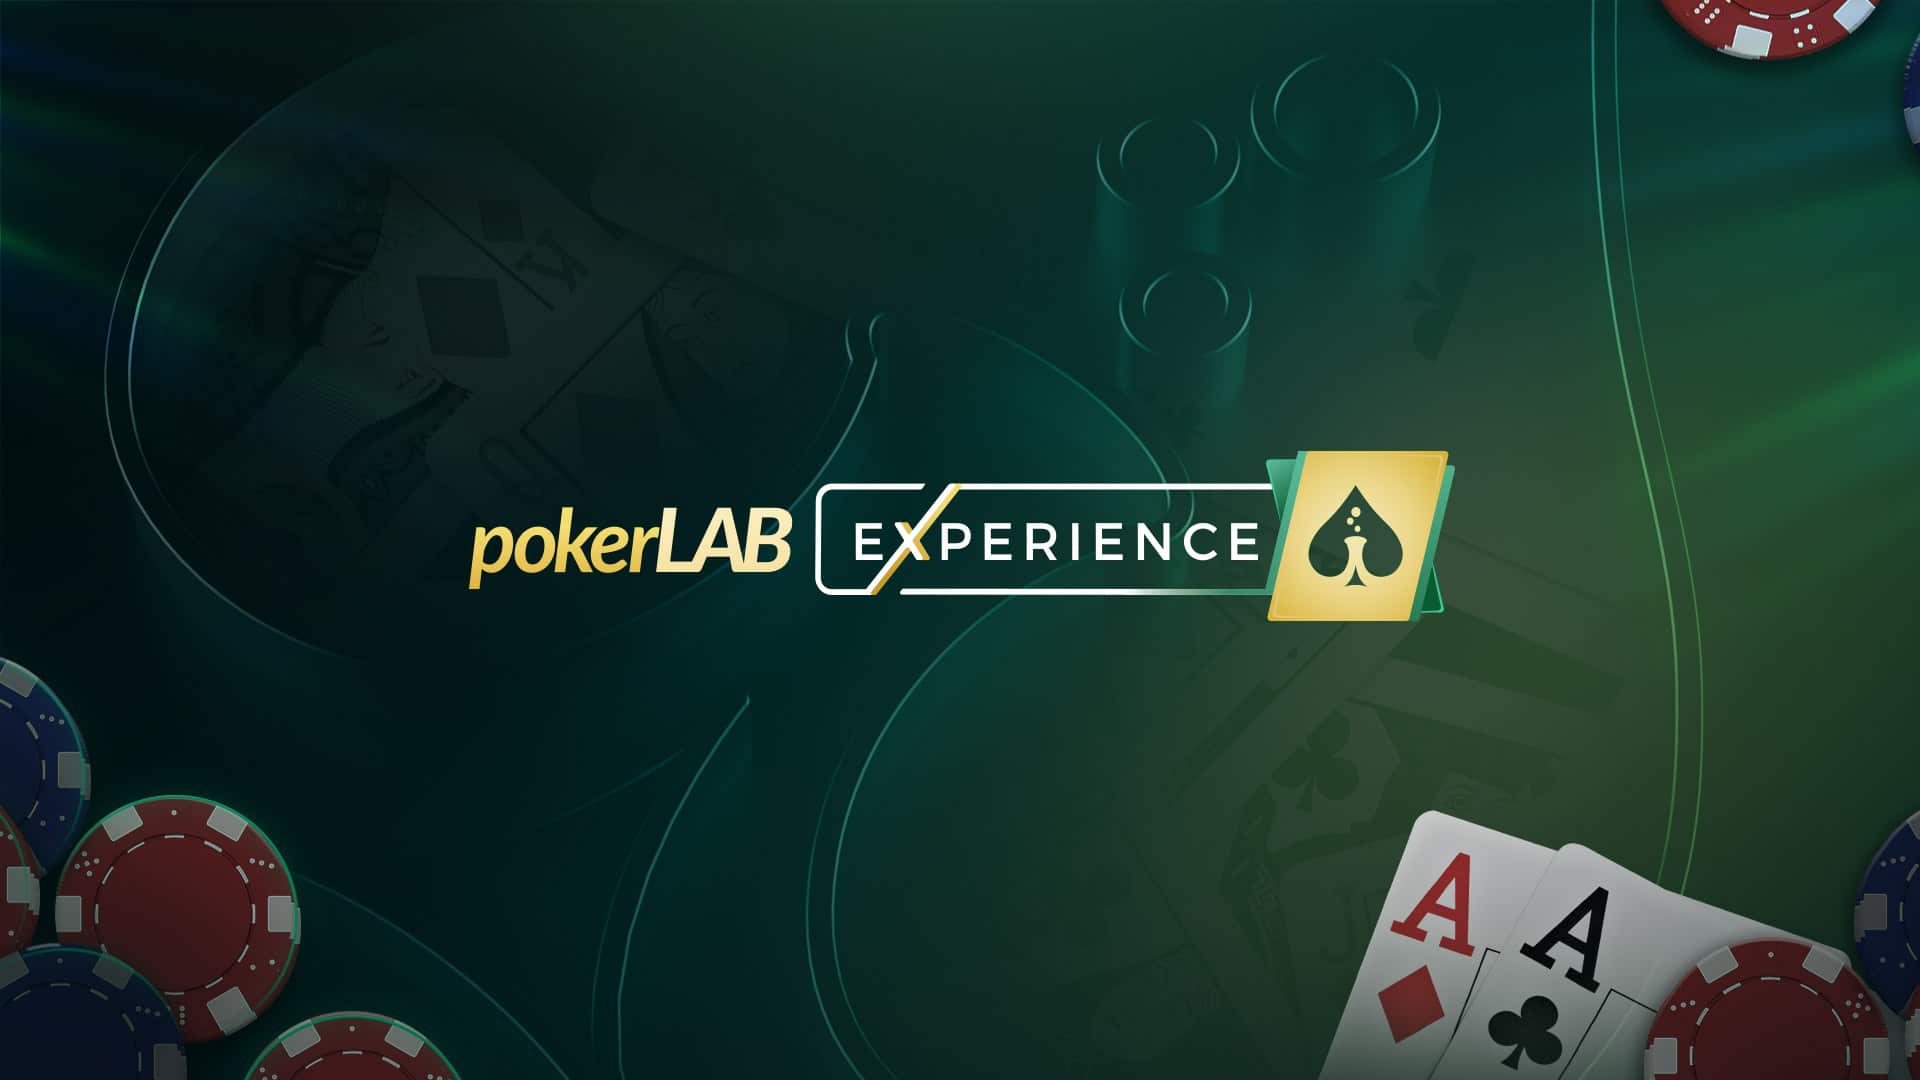 PokerLAB Experience - Curso Gratuito de poker